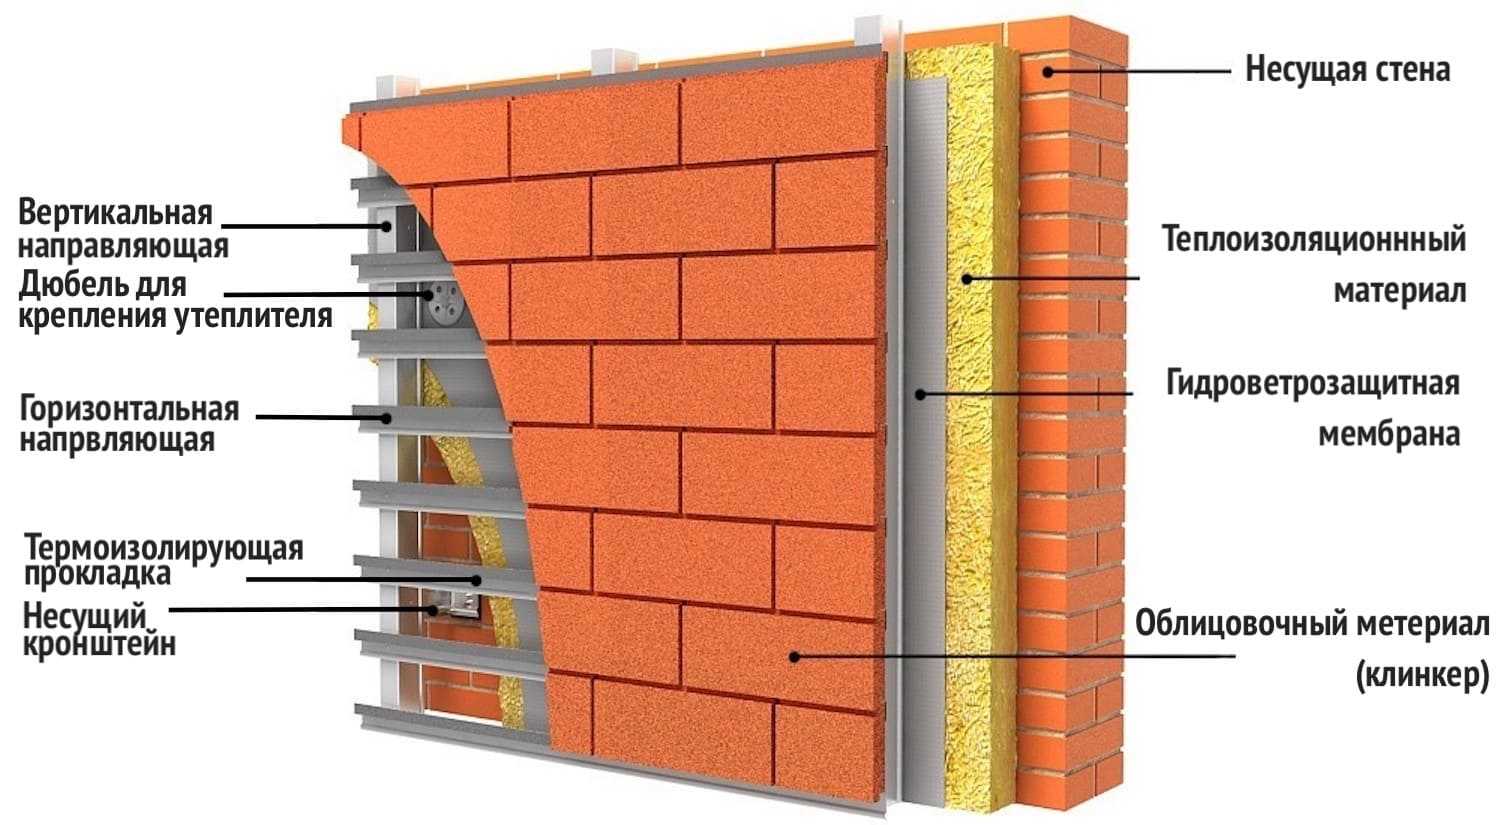 Способ утепления стен изнутри пенопластом: пошаговая инструкция по утеплению стен пенопластом своими руками